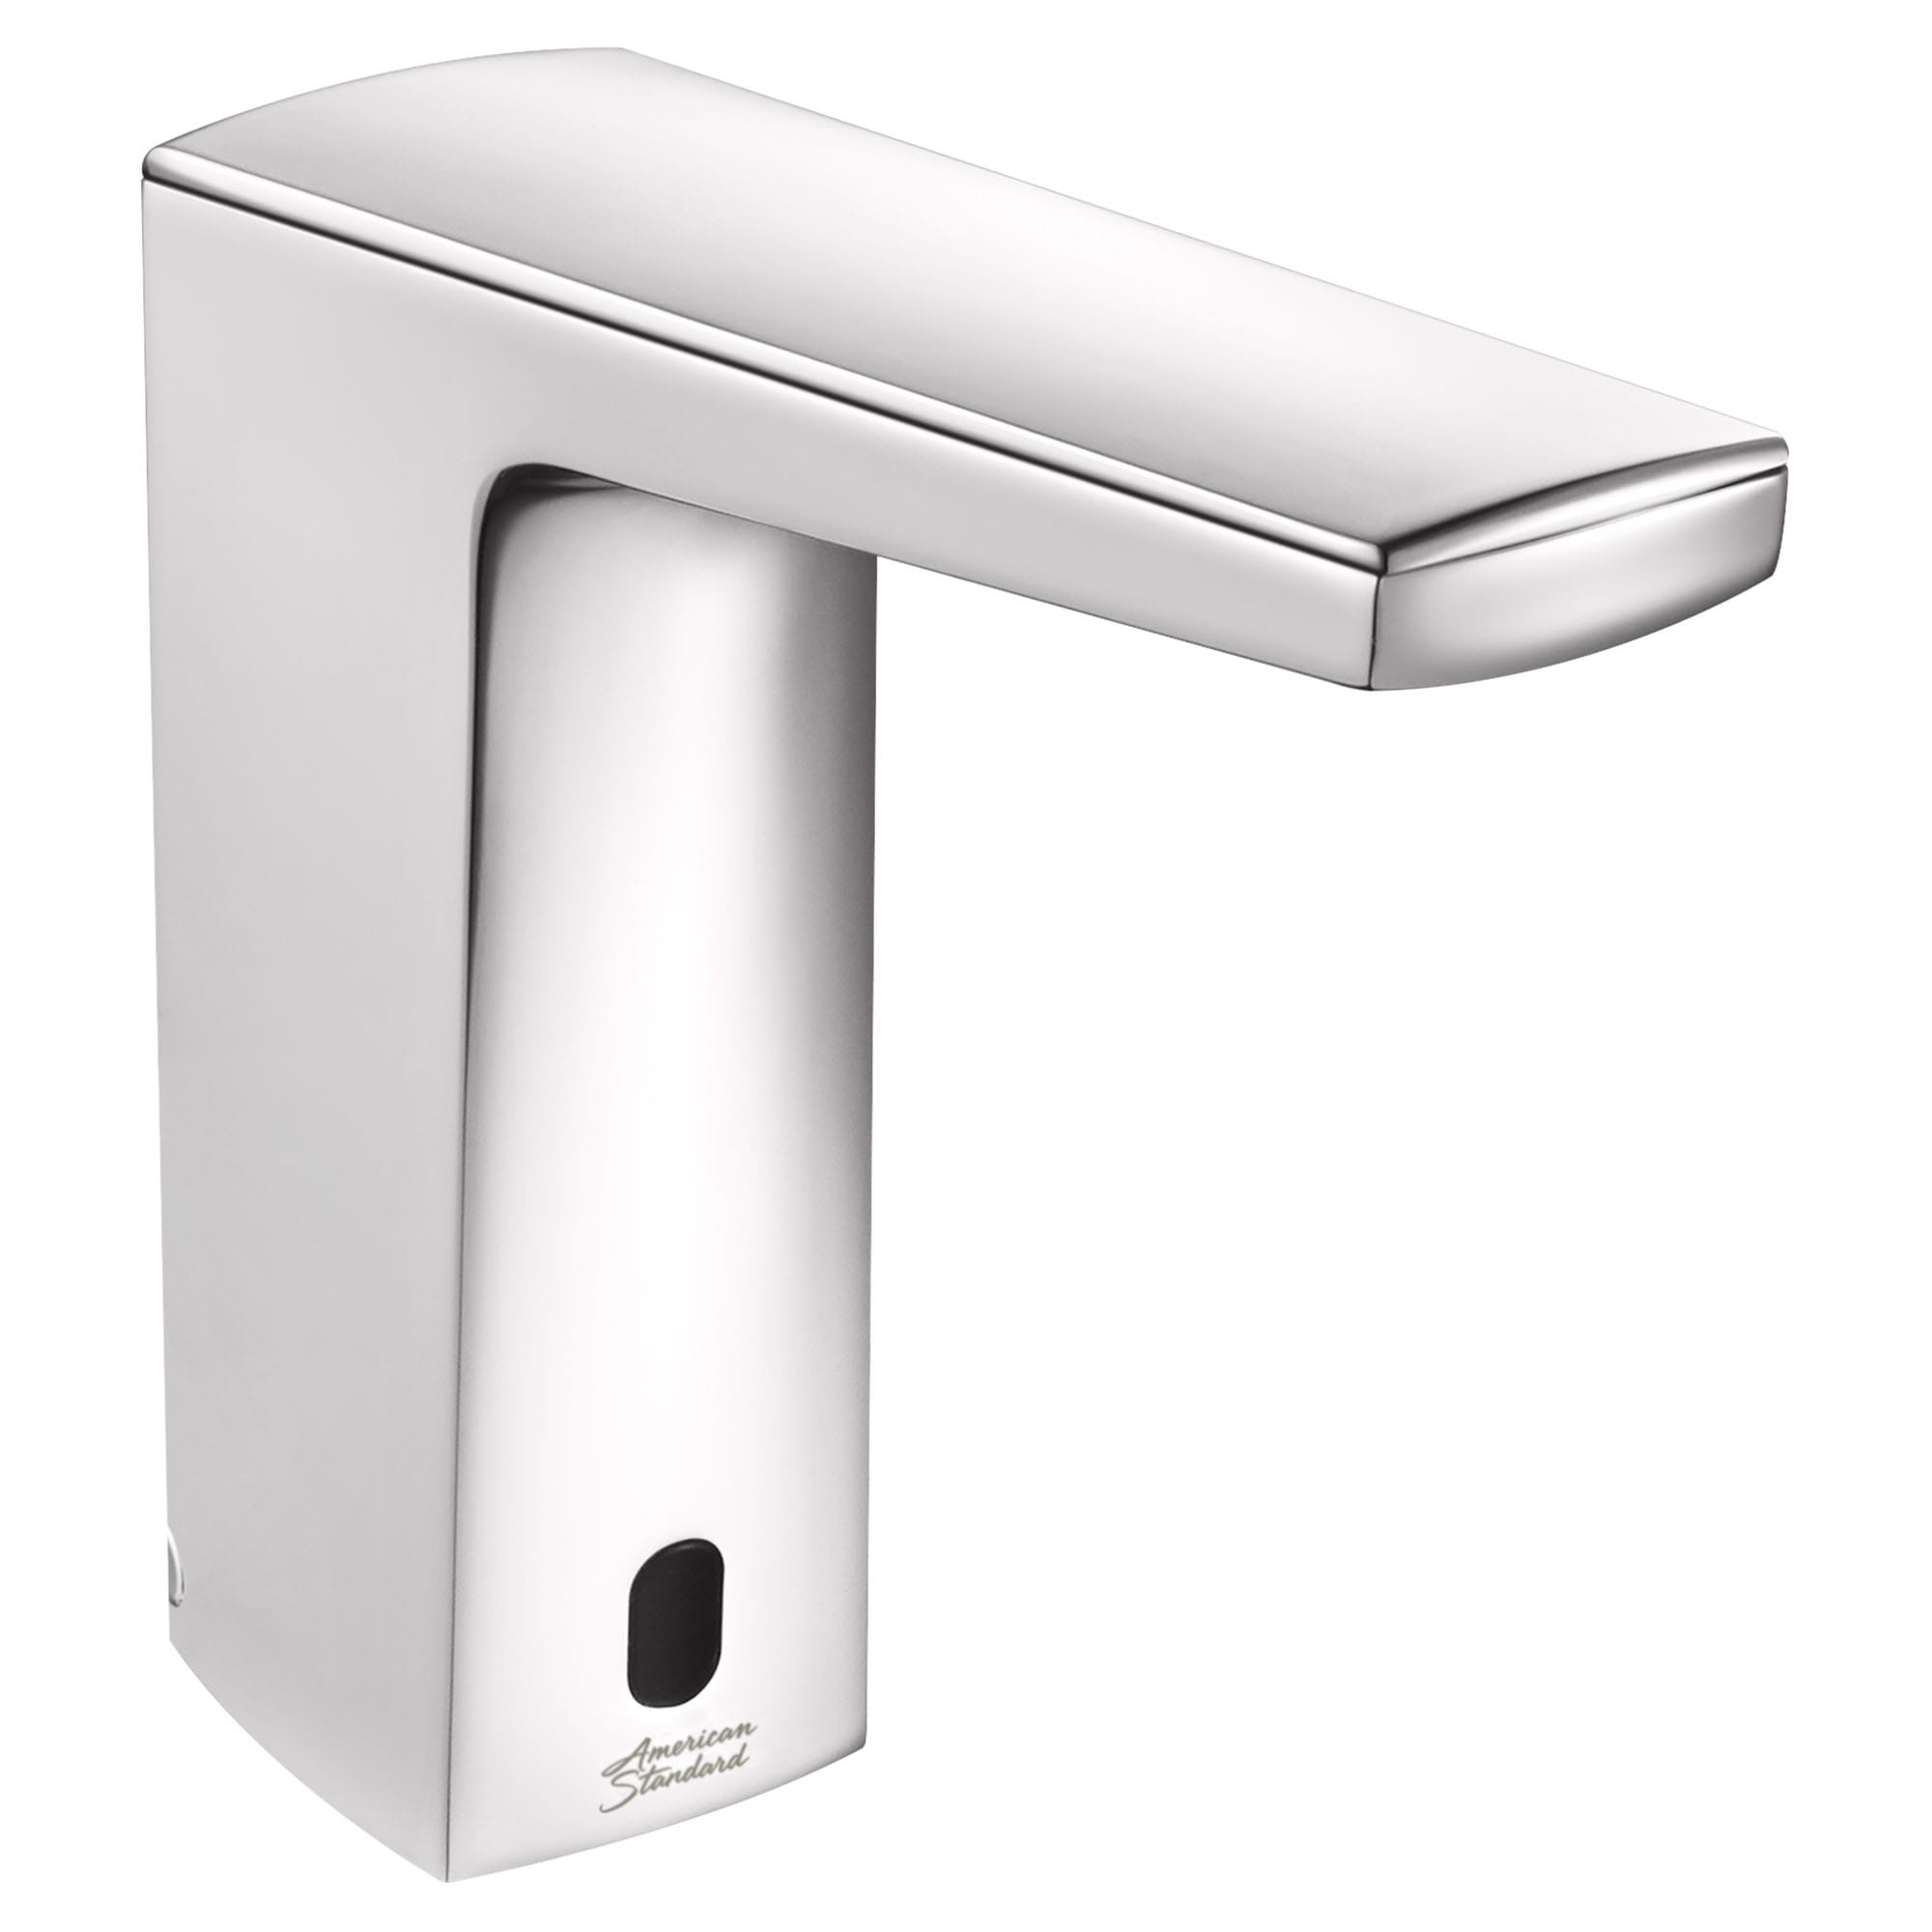 Paradigm Selectronic - robinet sans contact, alimentation à pile avec butée de sécurité SmarTherm + ADM, 0,35 gpm/1,3 lpm